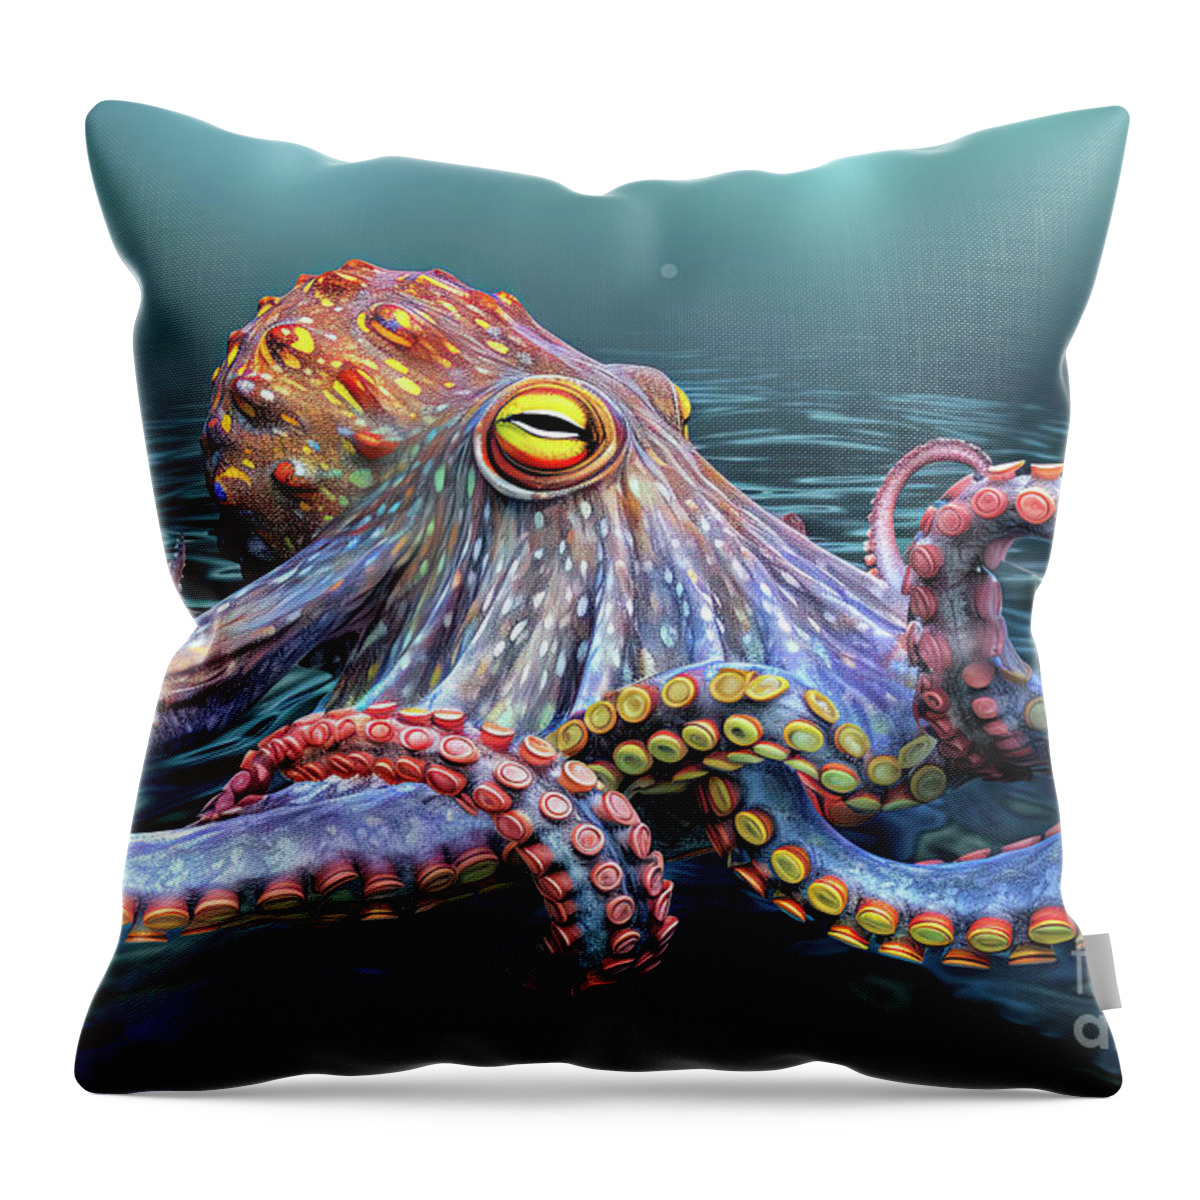 Octopus Throw Pillow featuring the digital art Octopus B by Vivian Krug Cotton